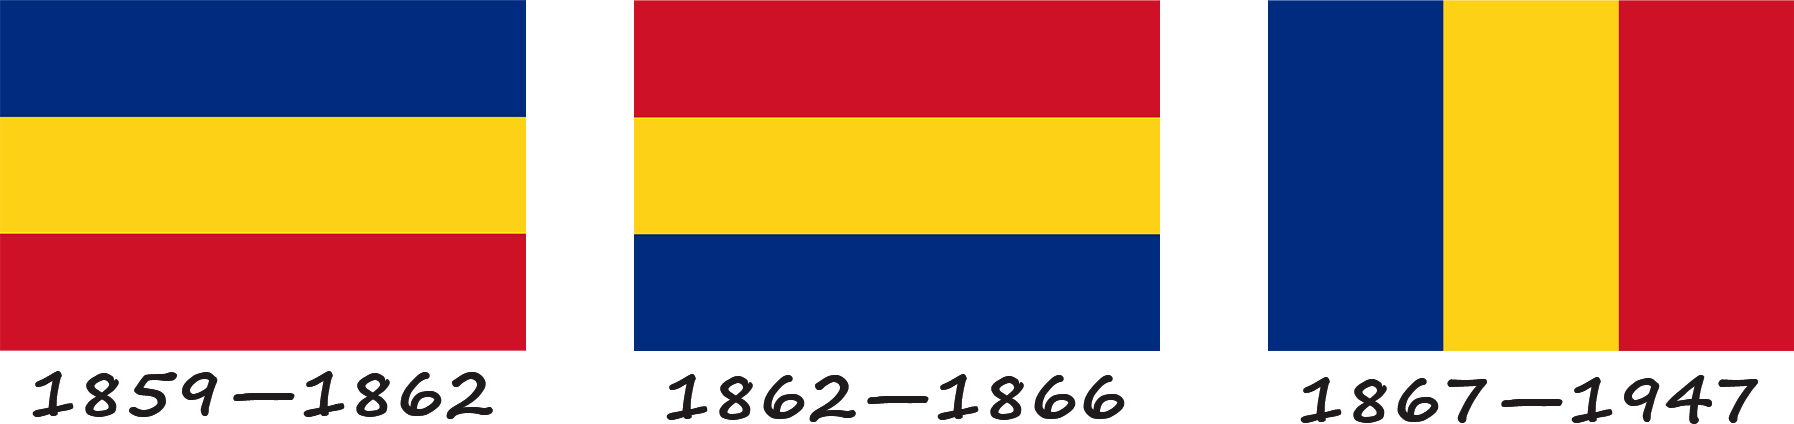 Historia de la bandera rumana